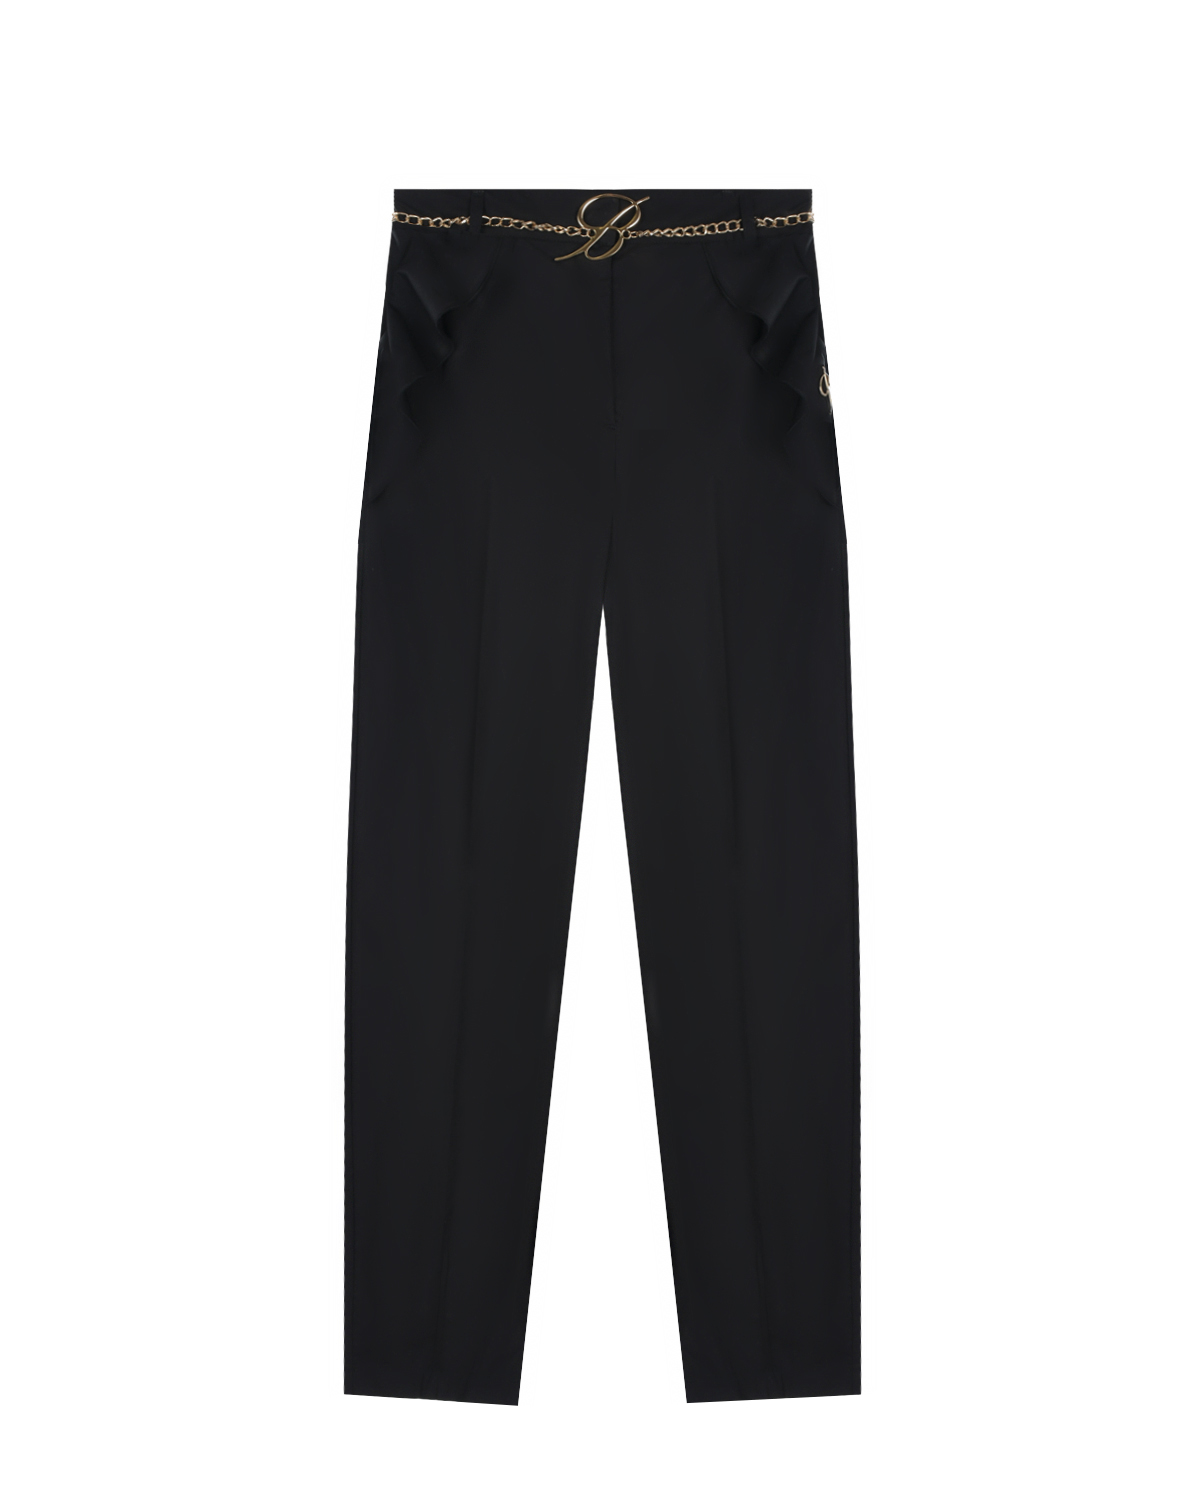 Черные брюки с цепочкой на поясе Miss Blumarine, размер 164, цвет черный - фото 1